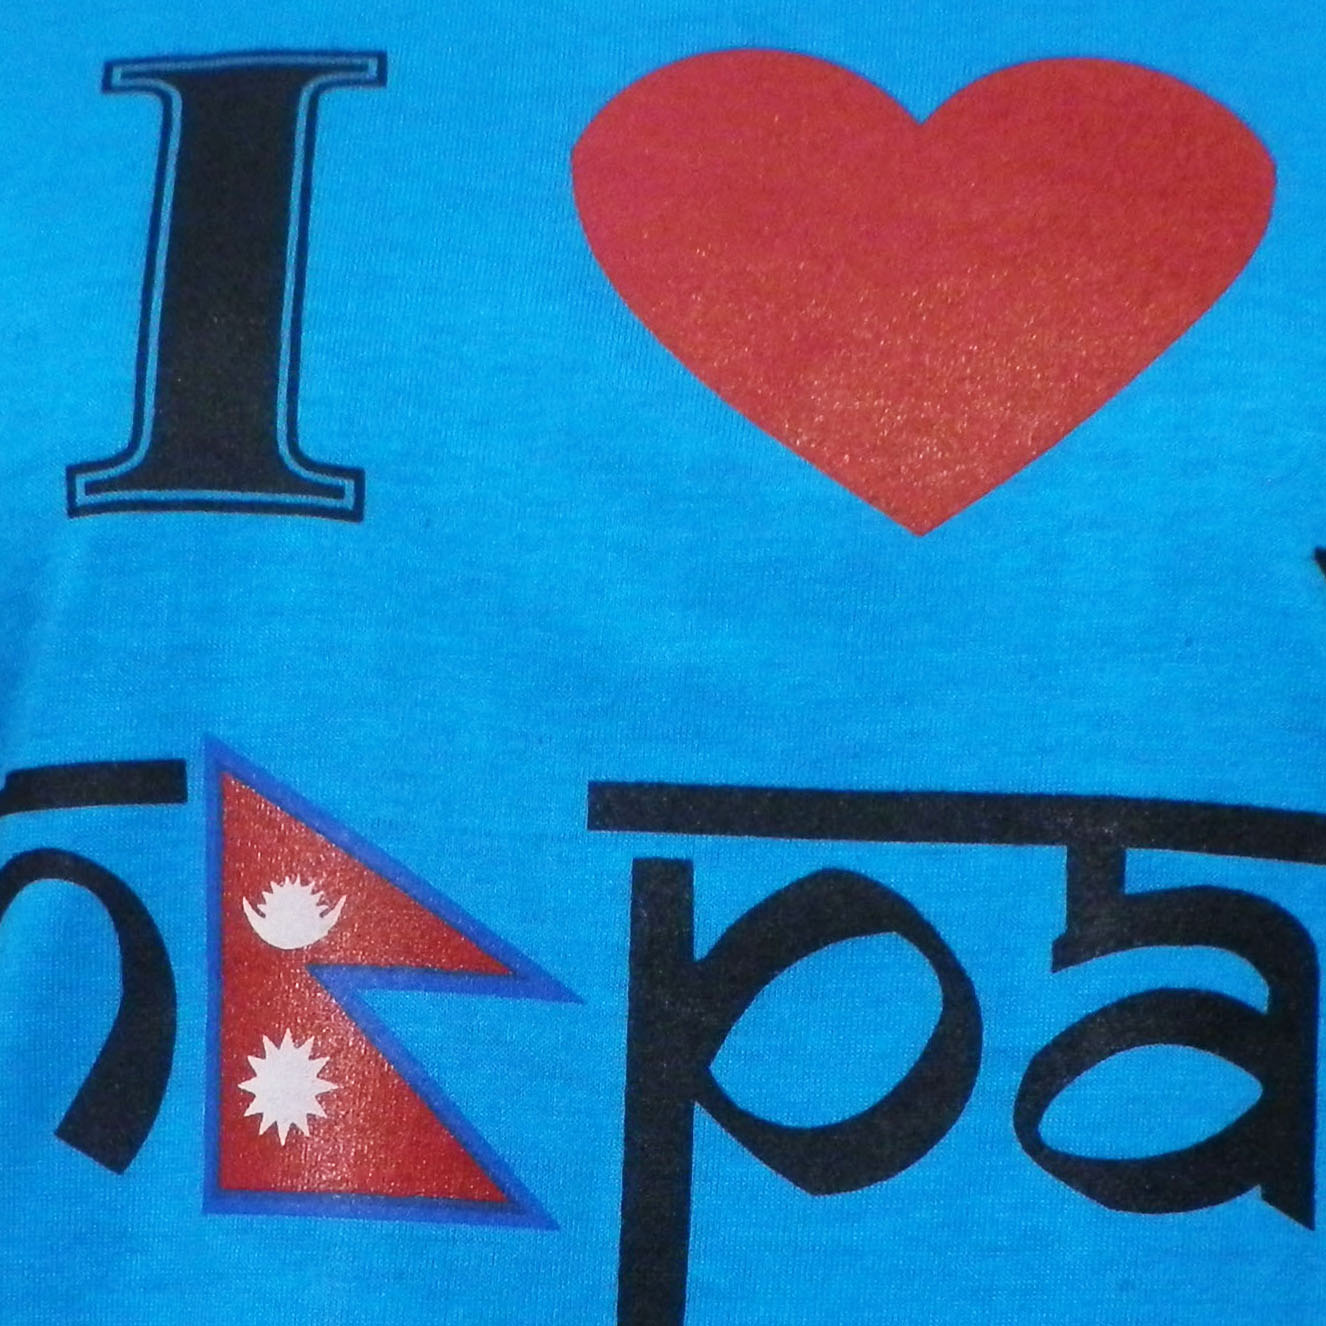 AWAߗ@IN-1 lp[ETVc(I love Nepal)